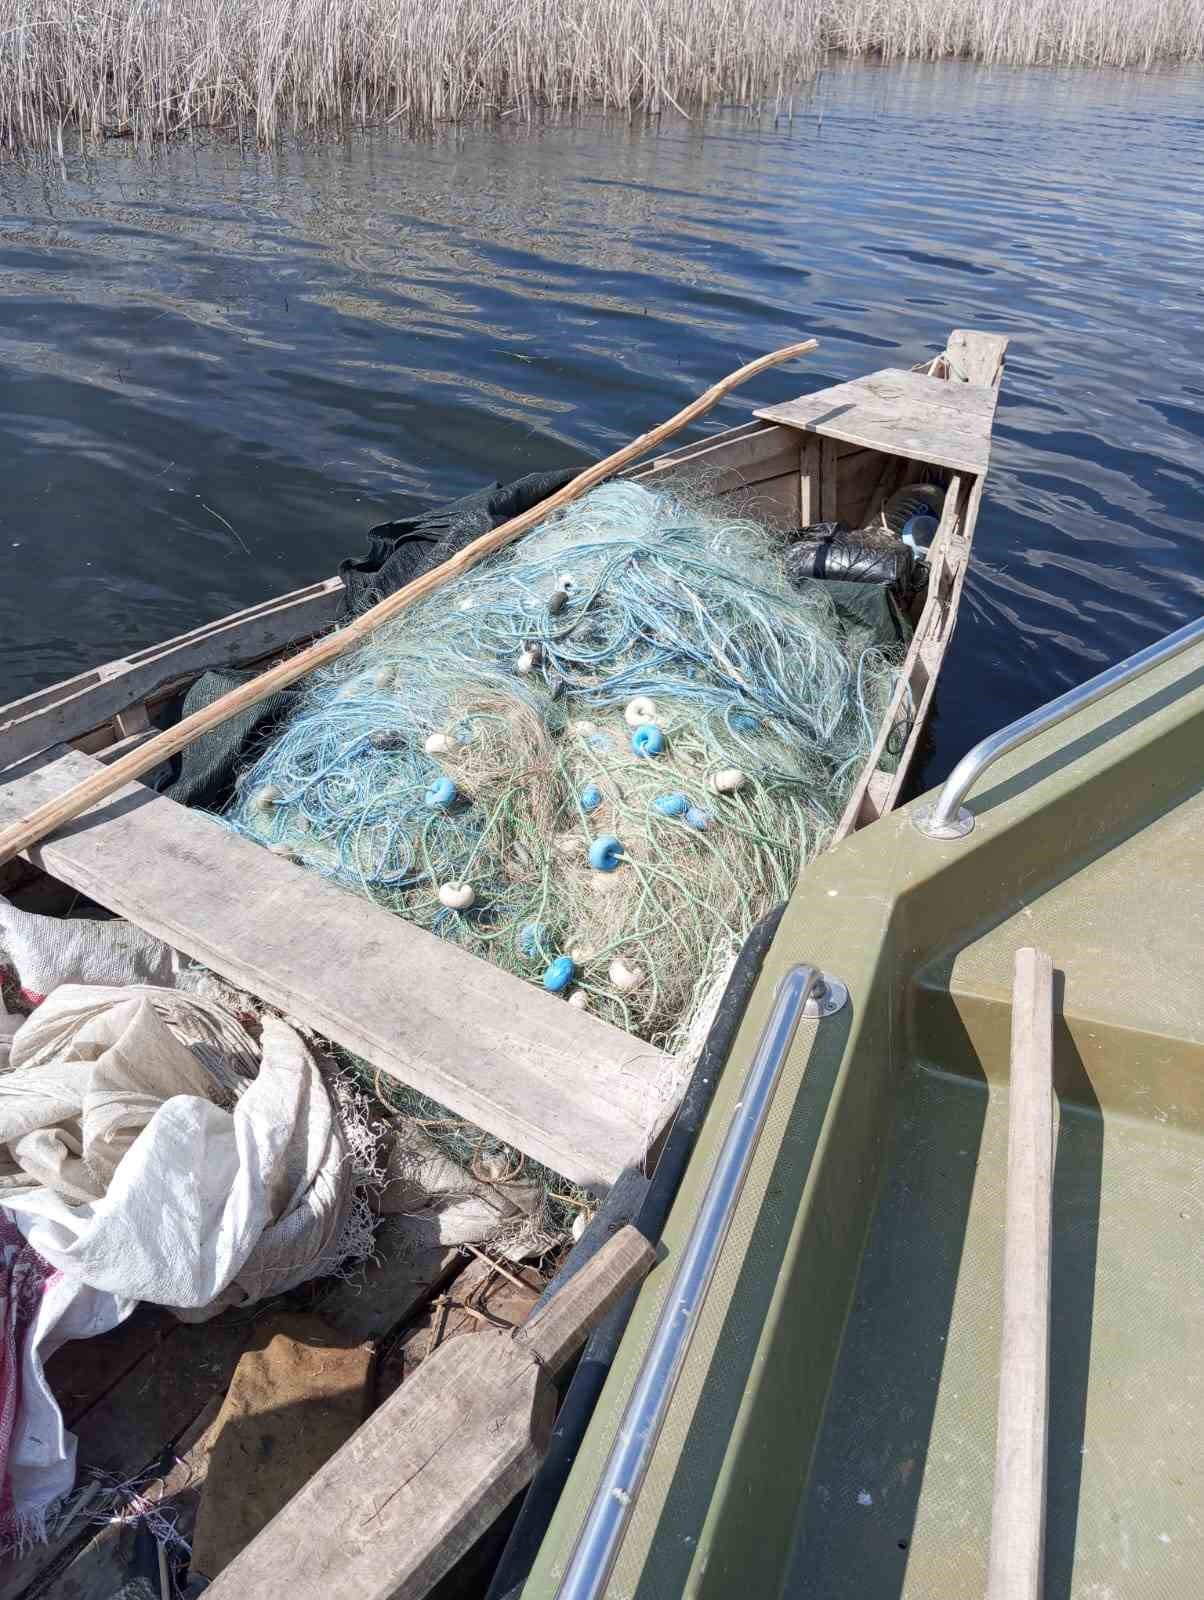 Denizli’de 40 bin metre balık ağıyla yakalanan 7 kişiye 292 bin lira ceza kesildi
